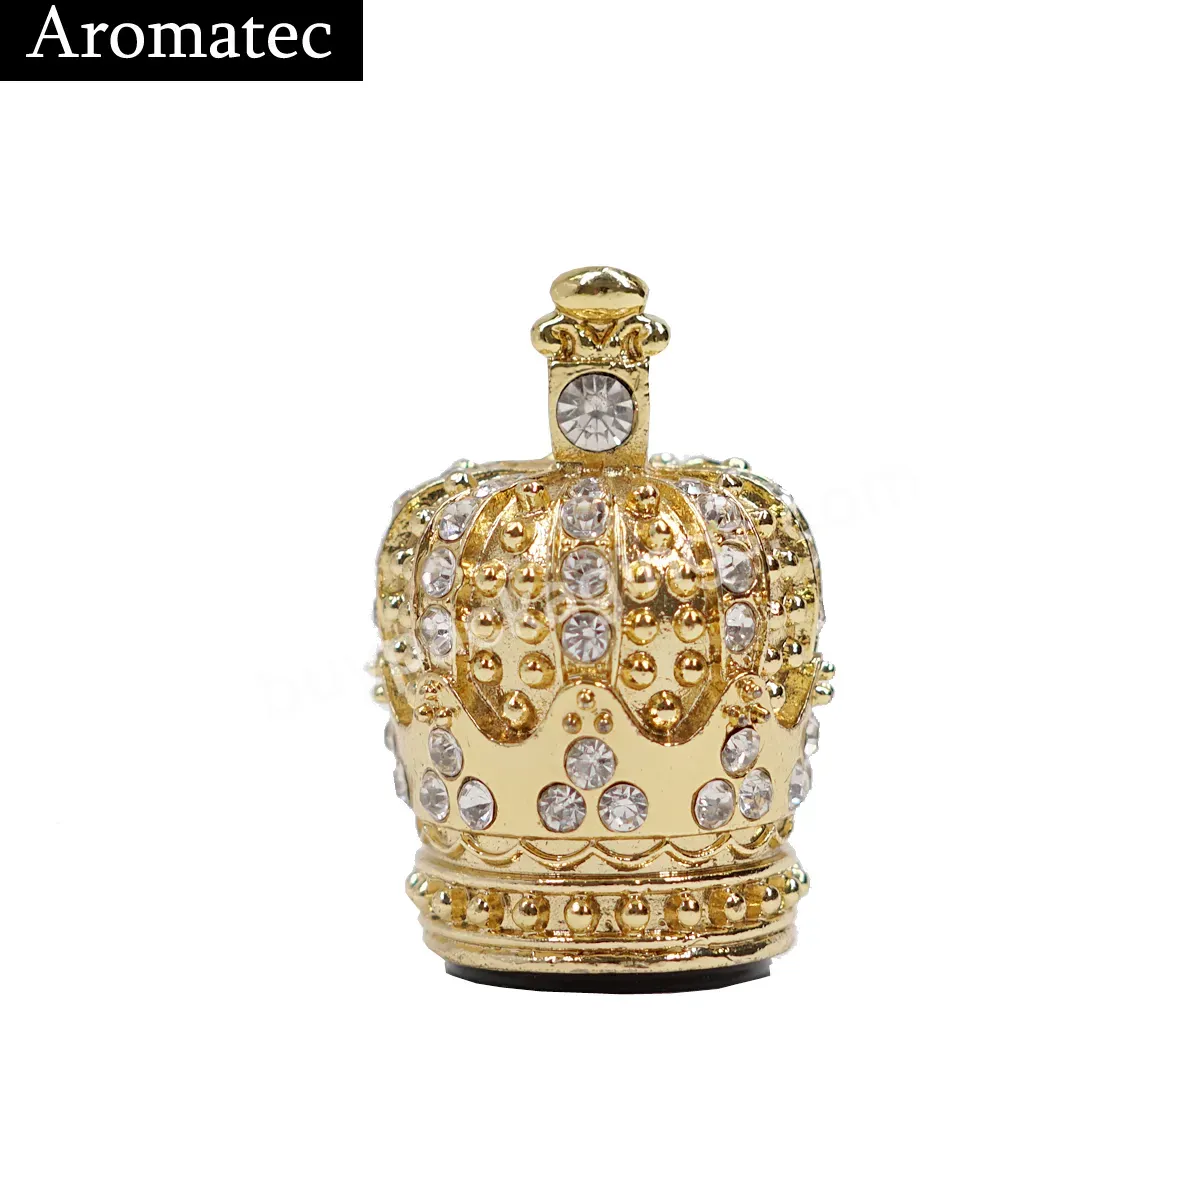 Luxury Custom Crown Perfume Bottle Cap Zamac Metal Perfume Bottle Lids - Buy Luxury Crown Perfume Cap,Crown Caps For Perfume Bottles,Crown Perfume Bottle Cover.